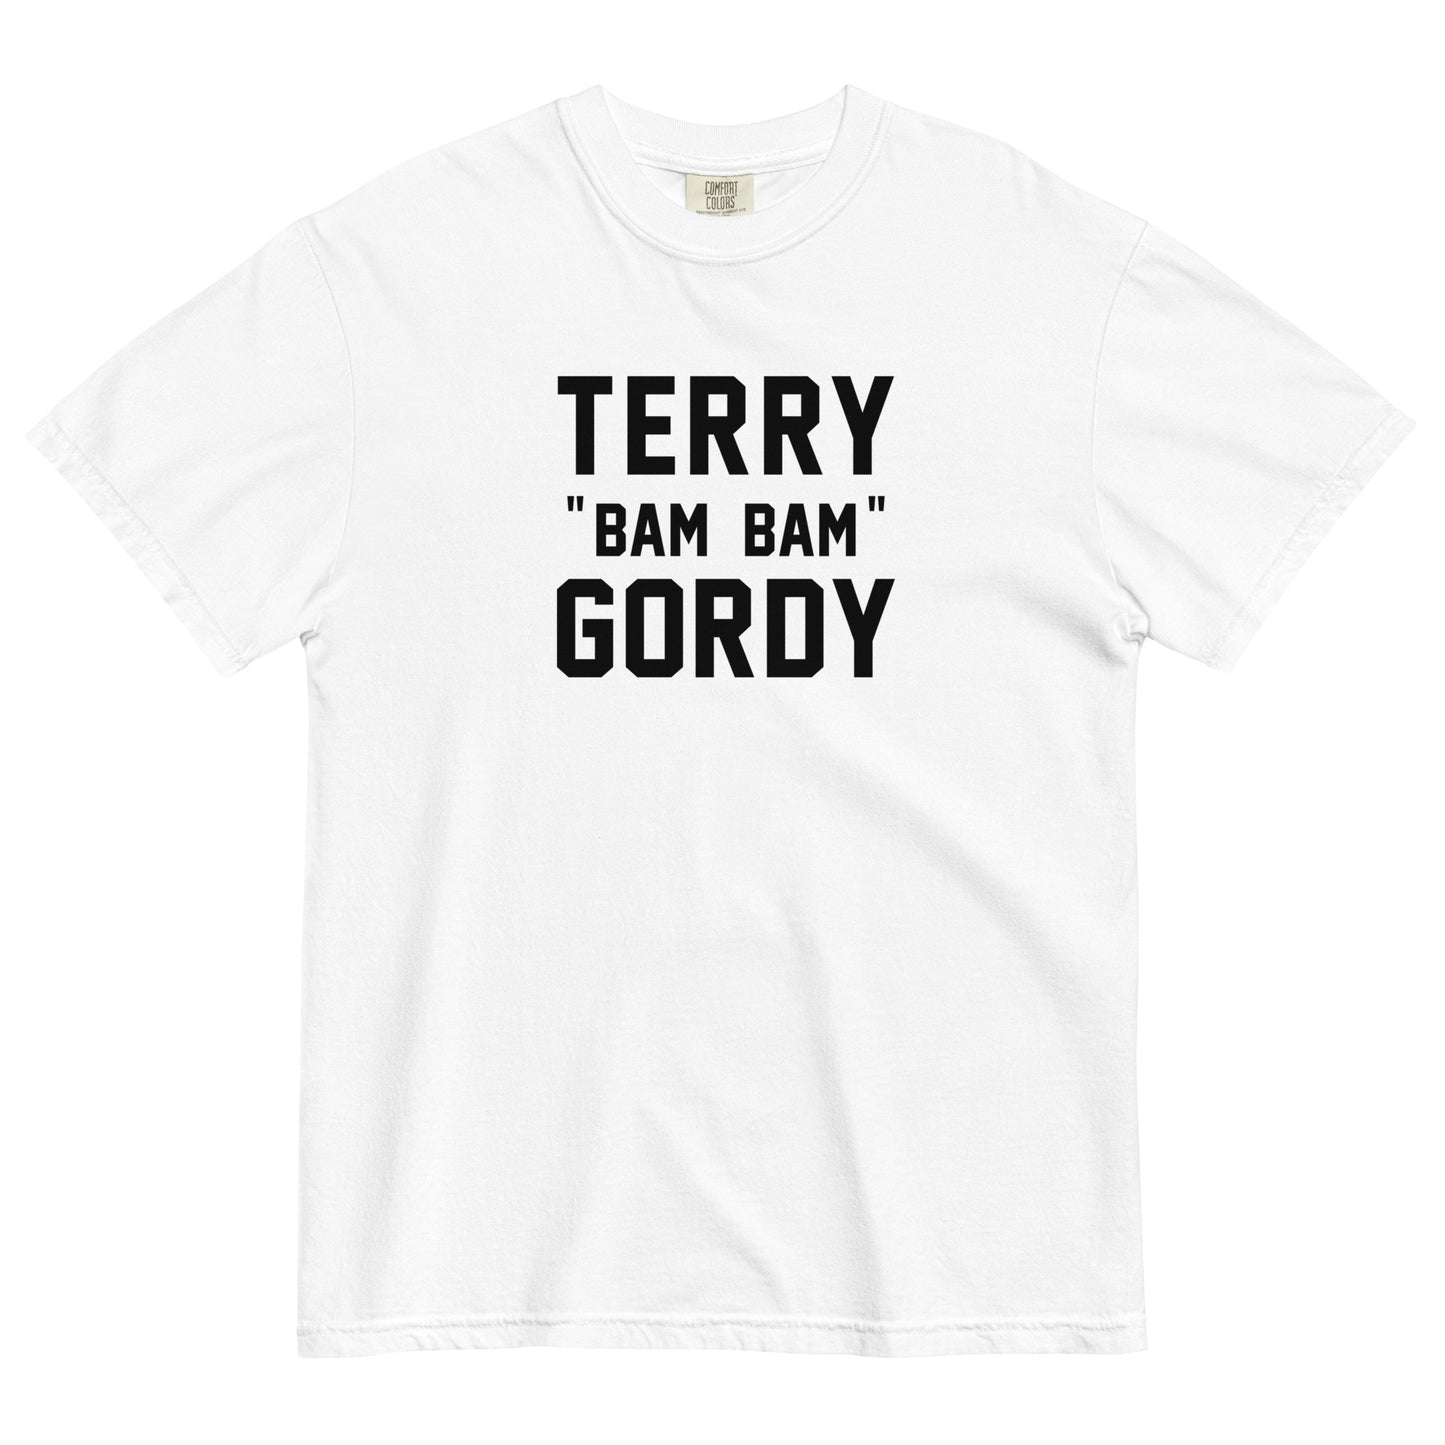 TERRY "BAM BAM" GORDY